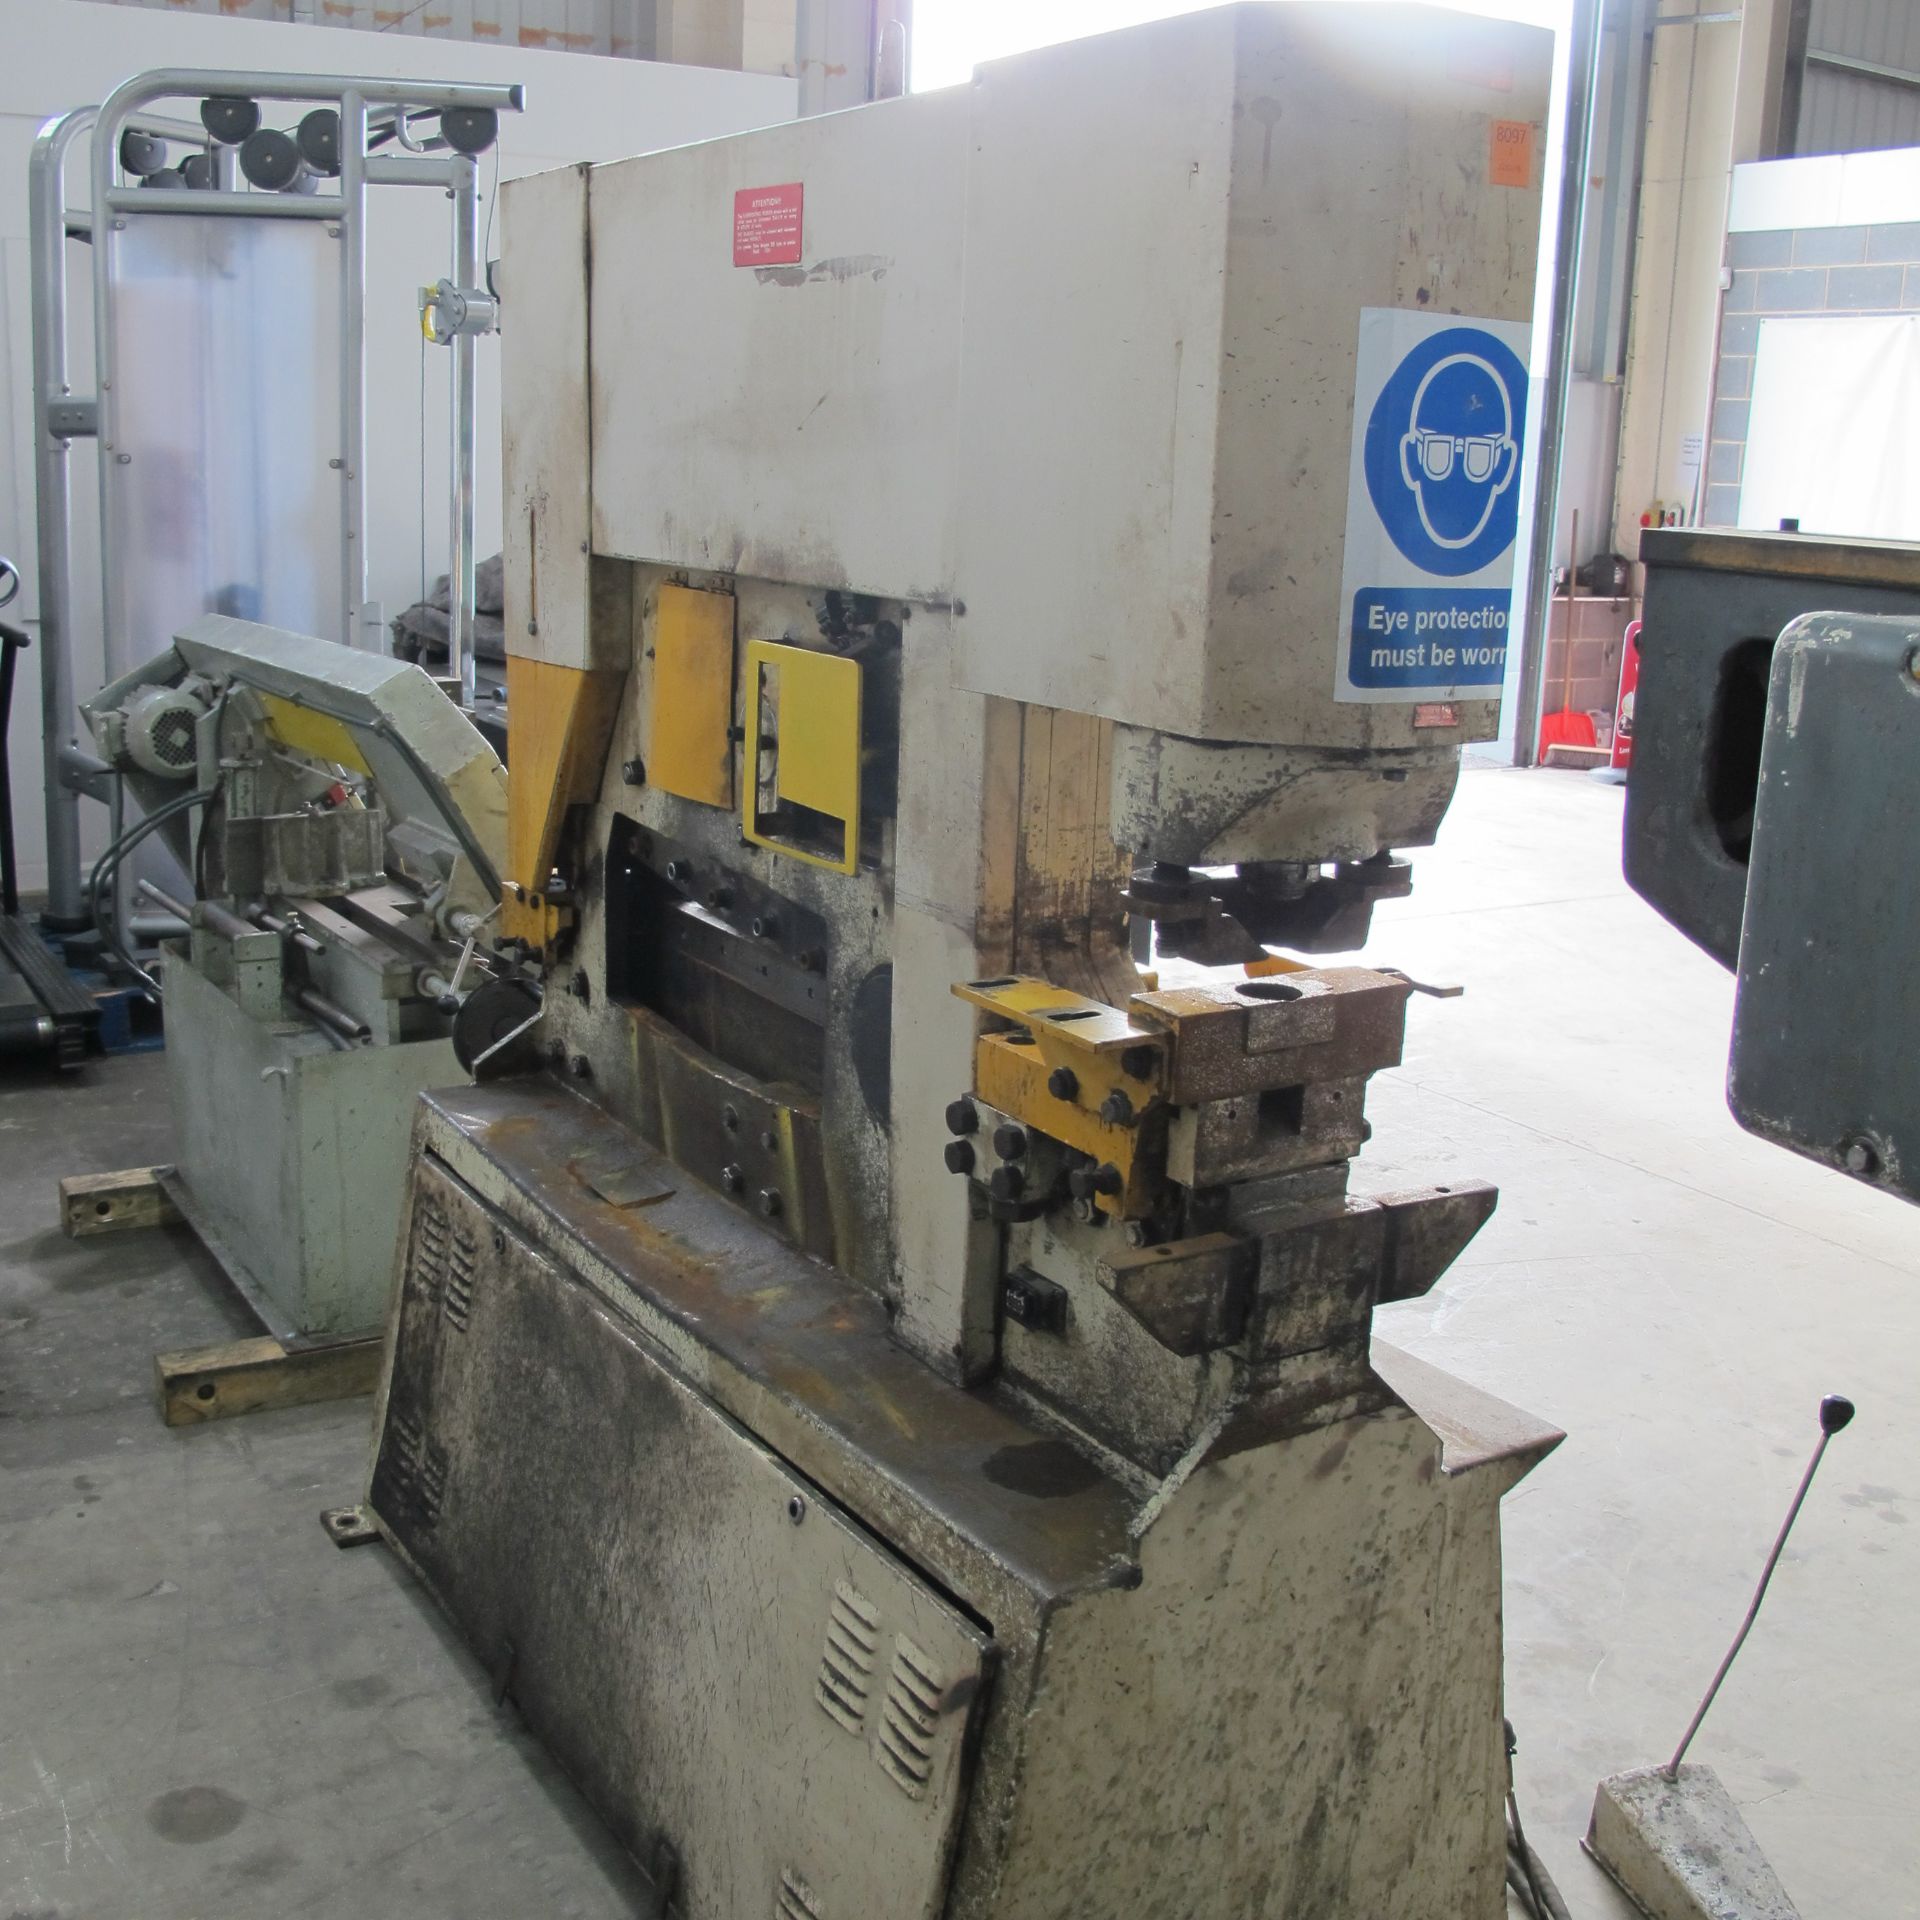 * Geka Hydracrop -100 -S 100 tonne Hydraulic Steelworker; 3 phase; press brake power 100TN - - Image 6 of 8